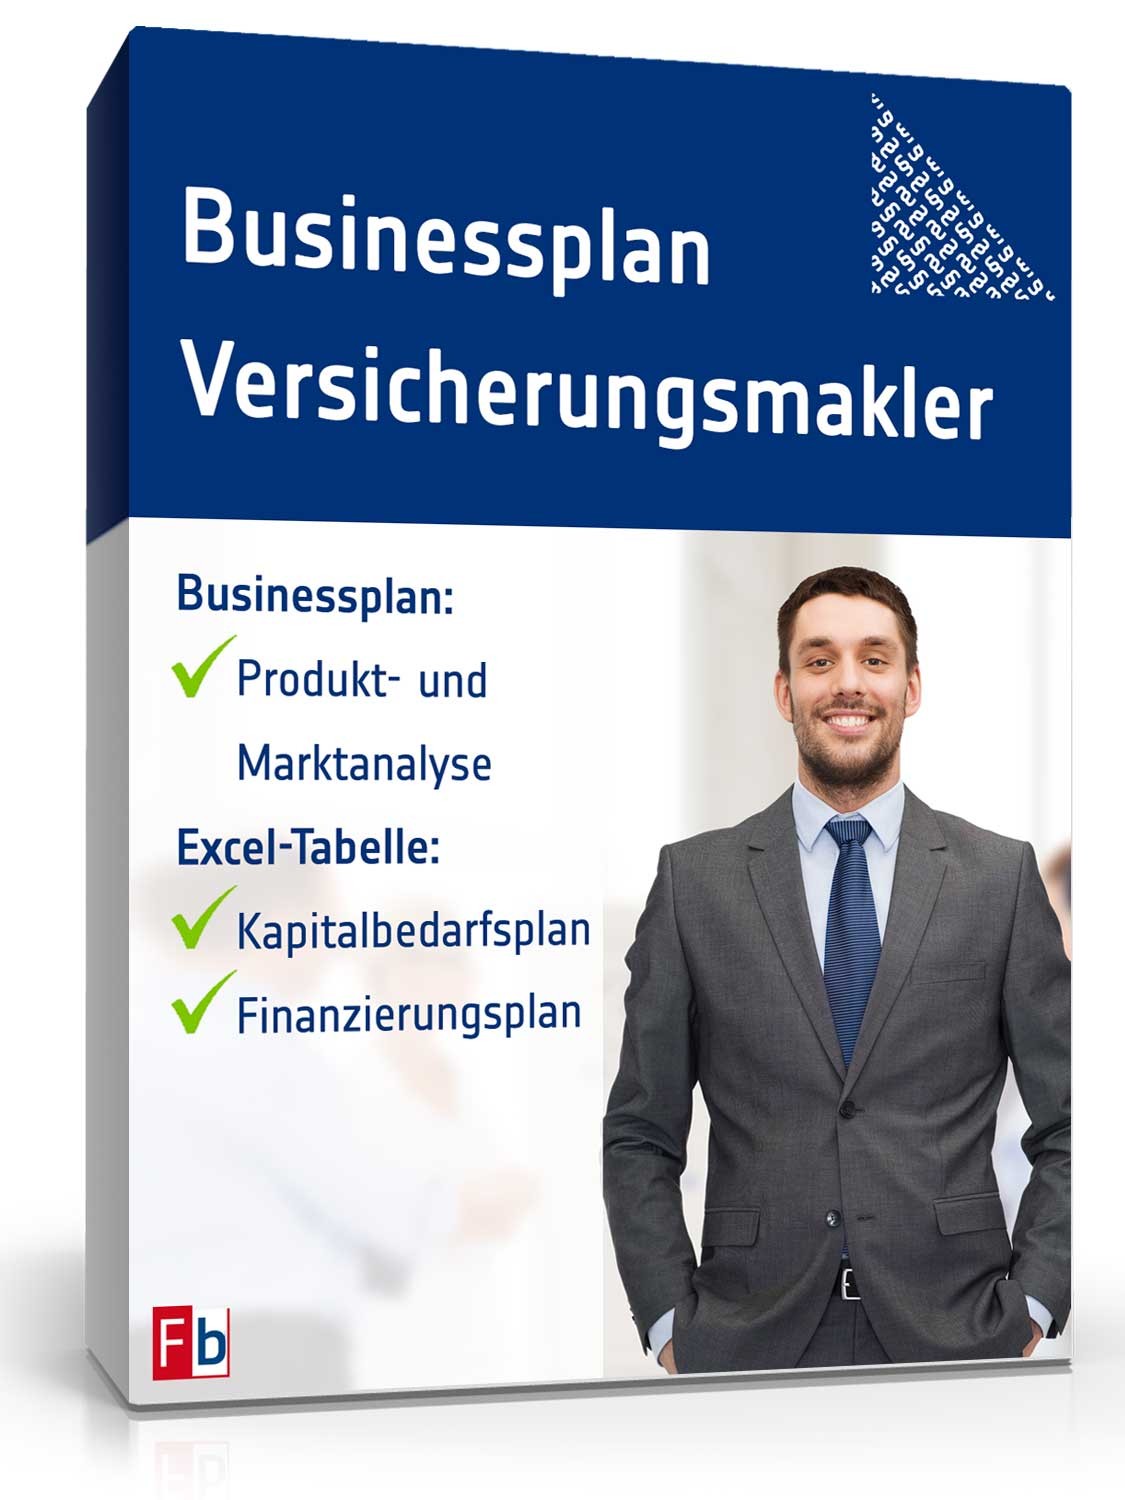 Hauptbild des Produkts: Businessplan Versicherungsmakler